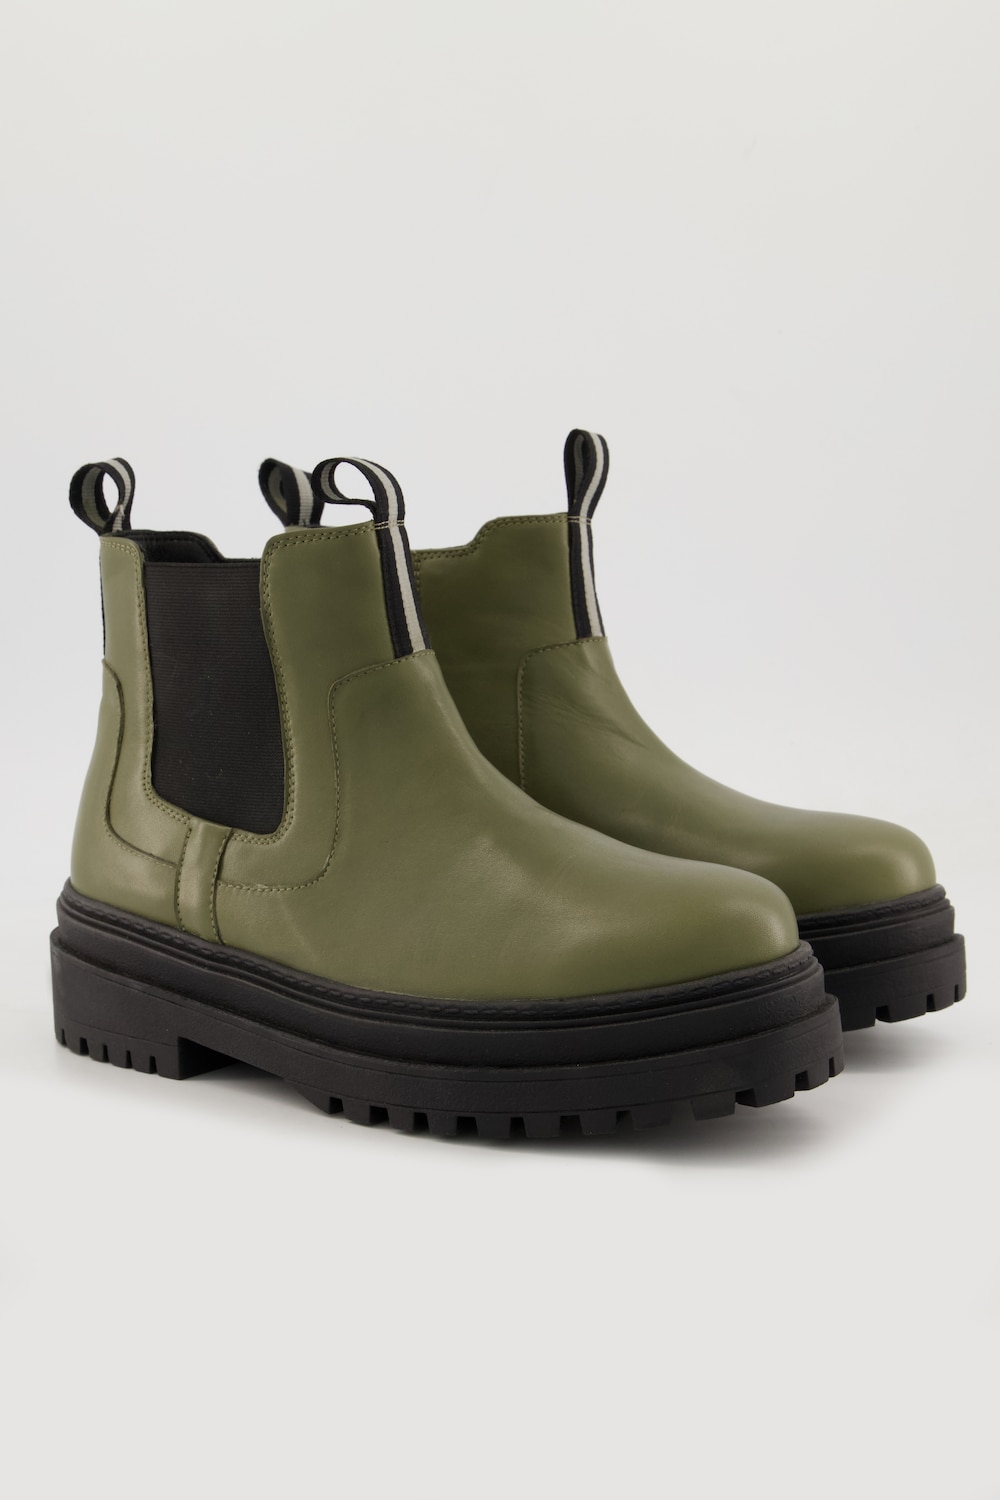 Chunky Chelsea-Boots, Damen, grün, Größe: 42, Leder/Synthetische Fasern, Ulla Popken von Ulla Popken